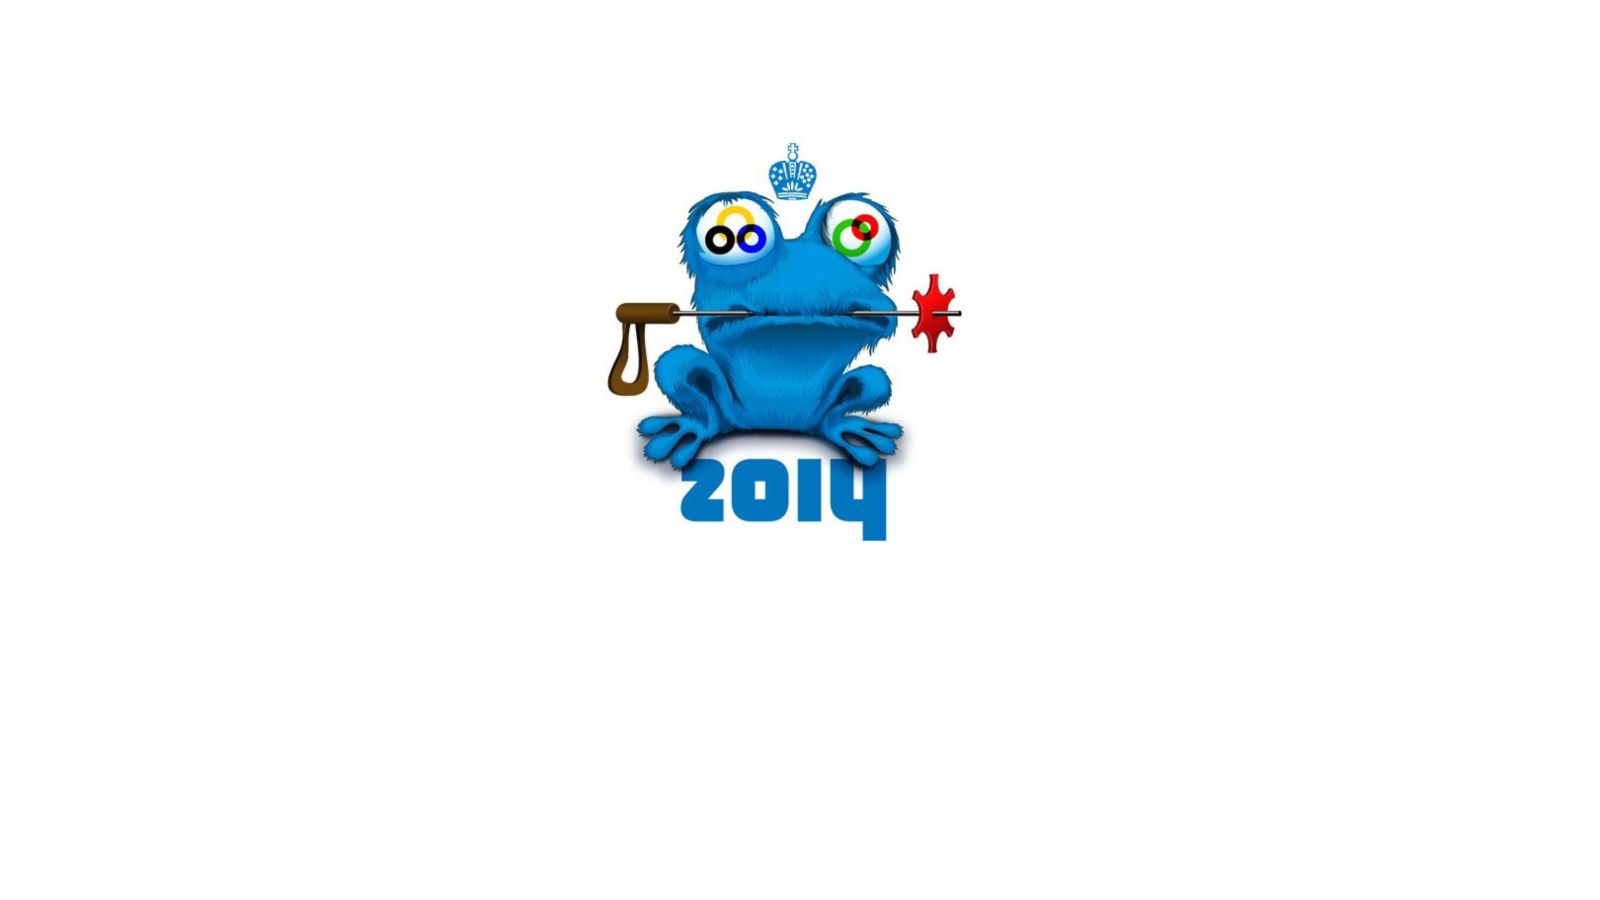 Sochi 2014 Olympic Mascot wallpaper 1600x900